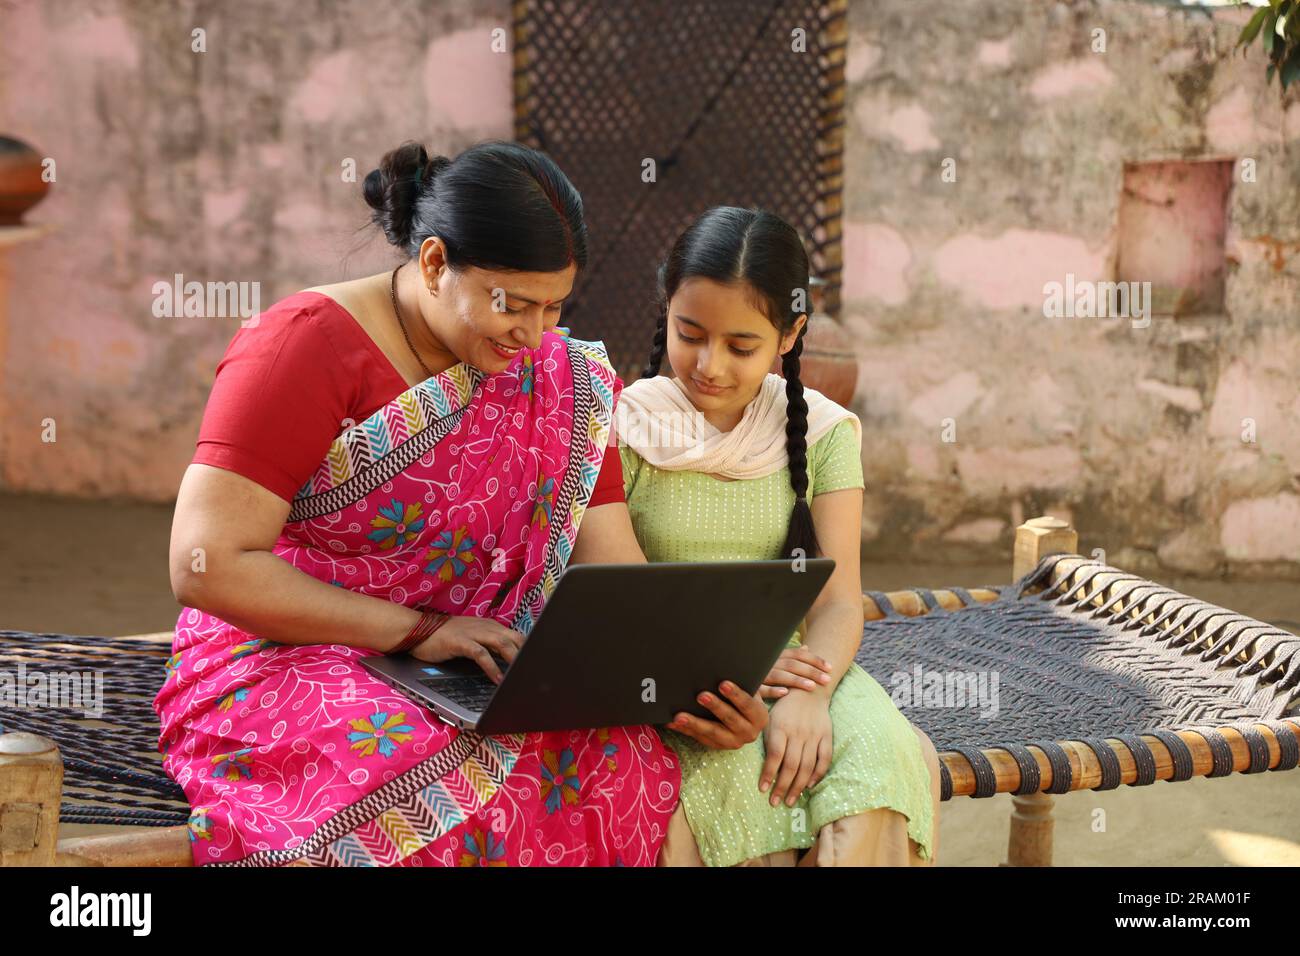 Eine glückliche Familie im indischen Dorf, alleinerziehende Mutter und Tochter, die ihren Laptop außerhalb des Hauses benutzen. Digitales Indien. Kindererziehung. Ermächtigung der Frau. Stockfoto